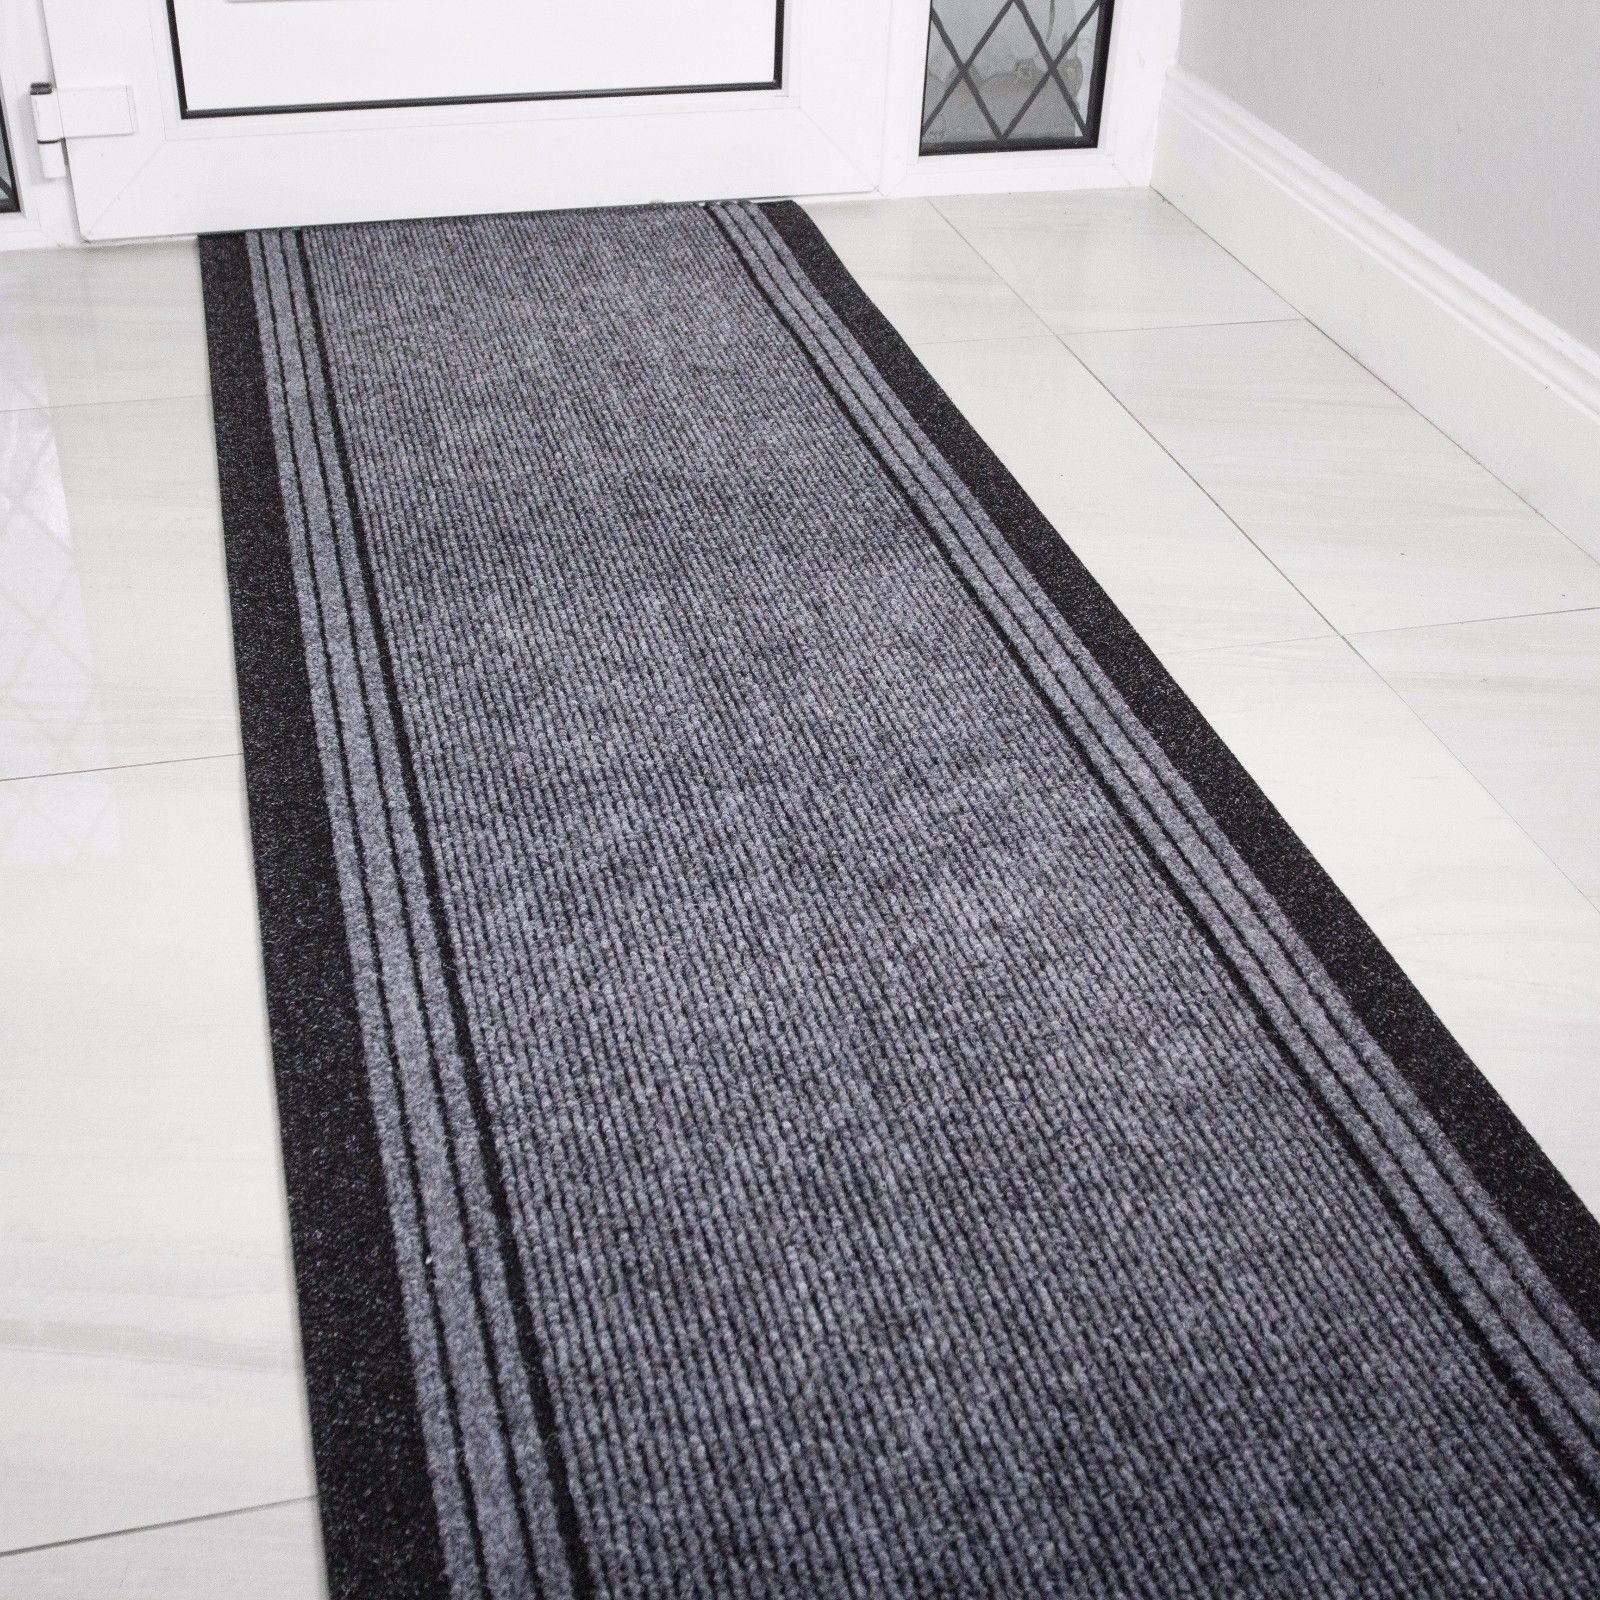 Black Modern Hall Runner Rug Long Rugs Hallway Area Carpet Non Slip Rubber Mat 